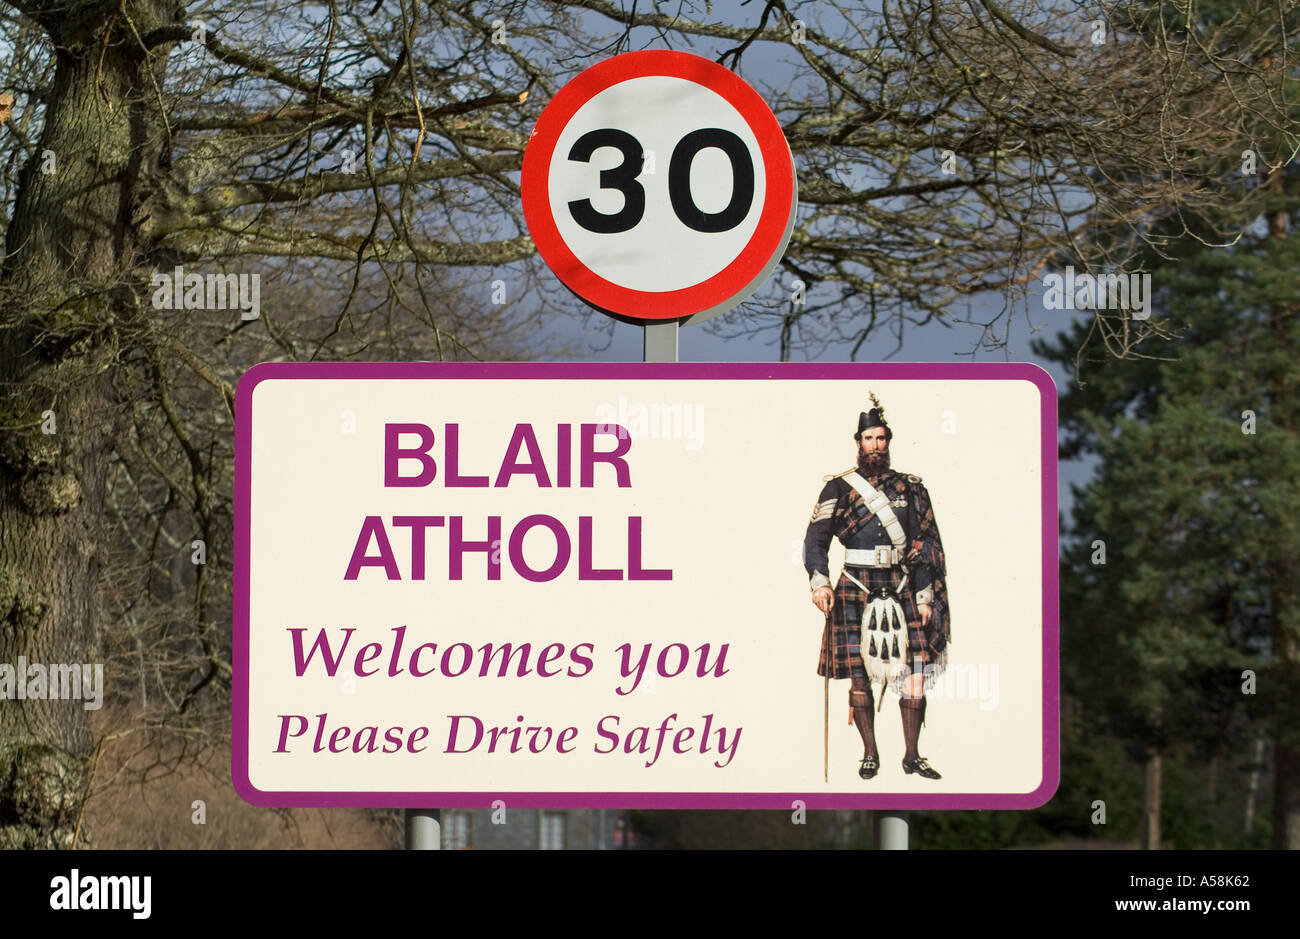 dh BLAIR ATHOLL PERTHSHIRE Willkommen, bitte fahren Sie sicher Zeichen 30 Mph Speed Limit Highlands Roadsign uk Village Road Stockfoto